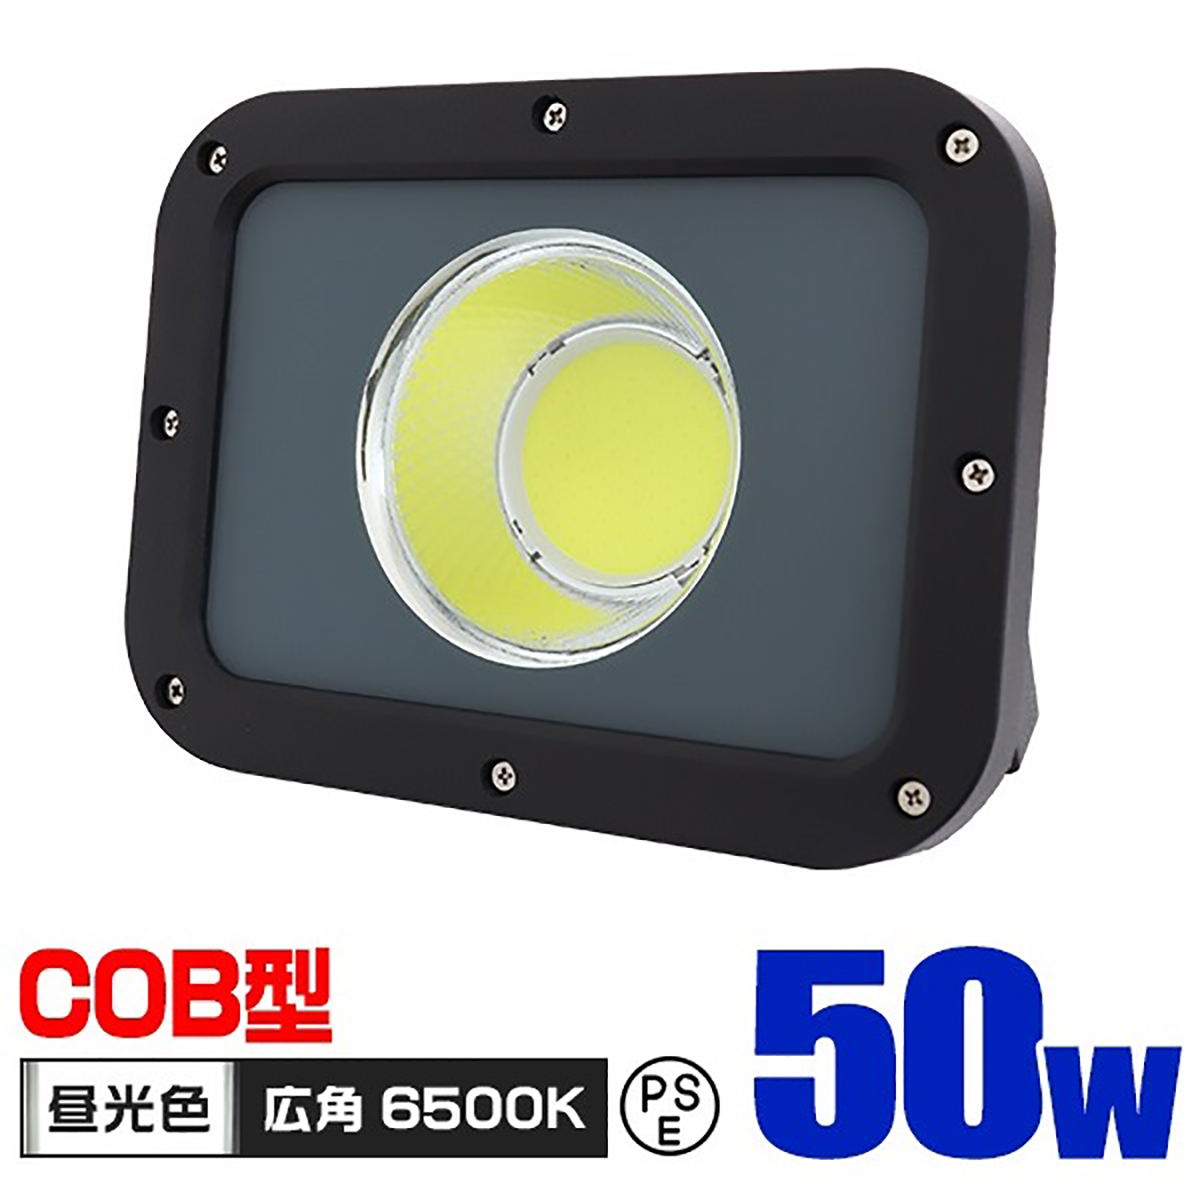 COB型 LED投光器 100W 8500lm 防水 防塵 作業灯 投光器 昼光色 6500K